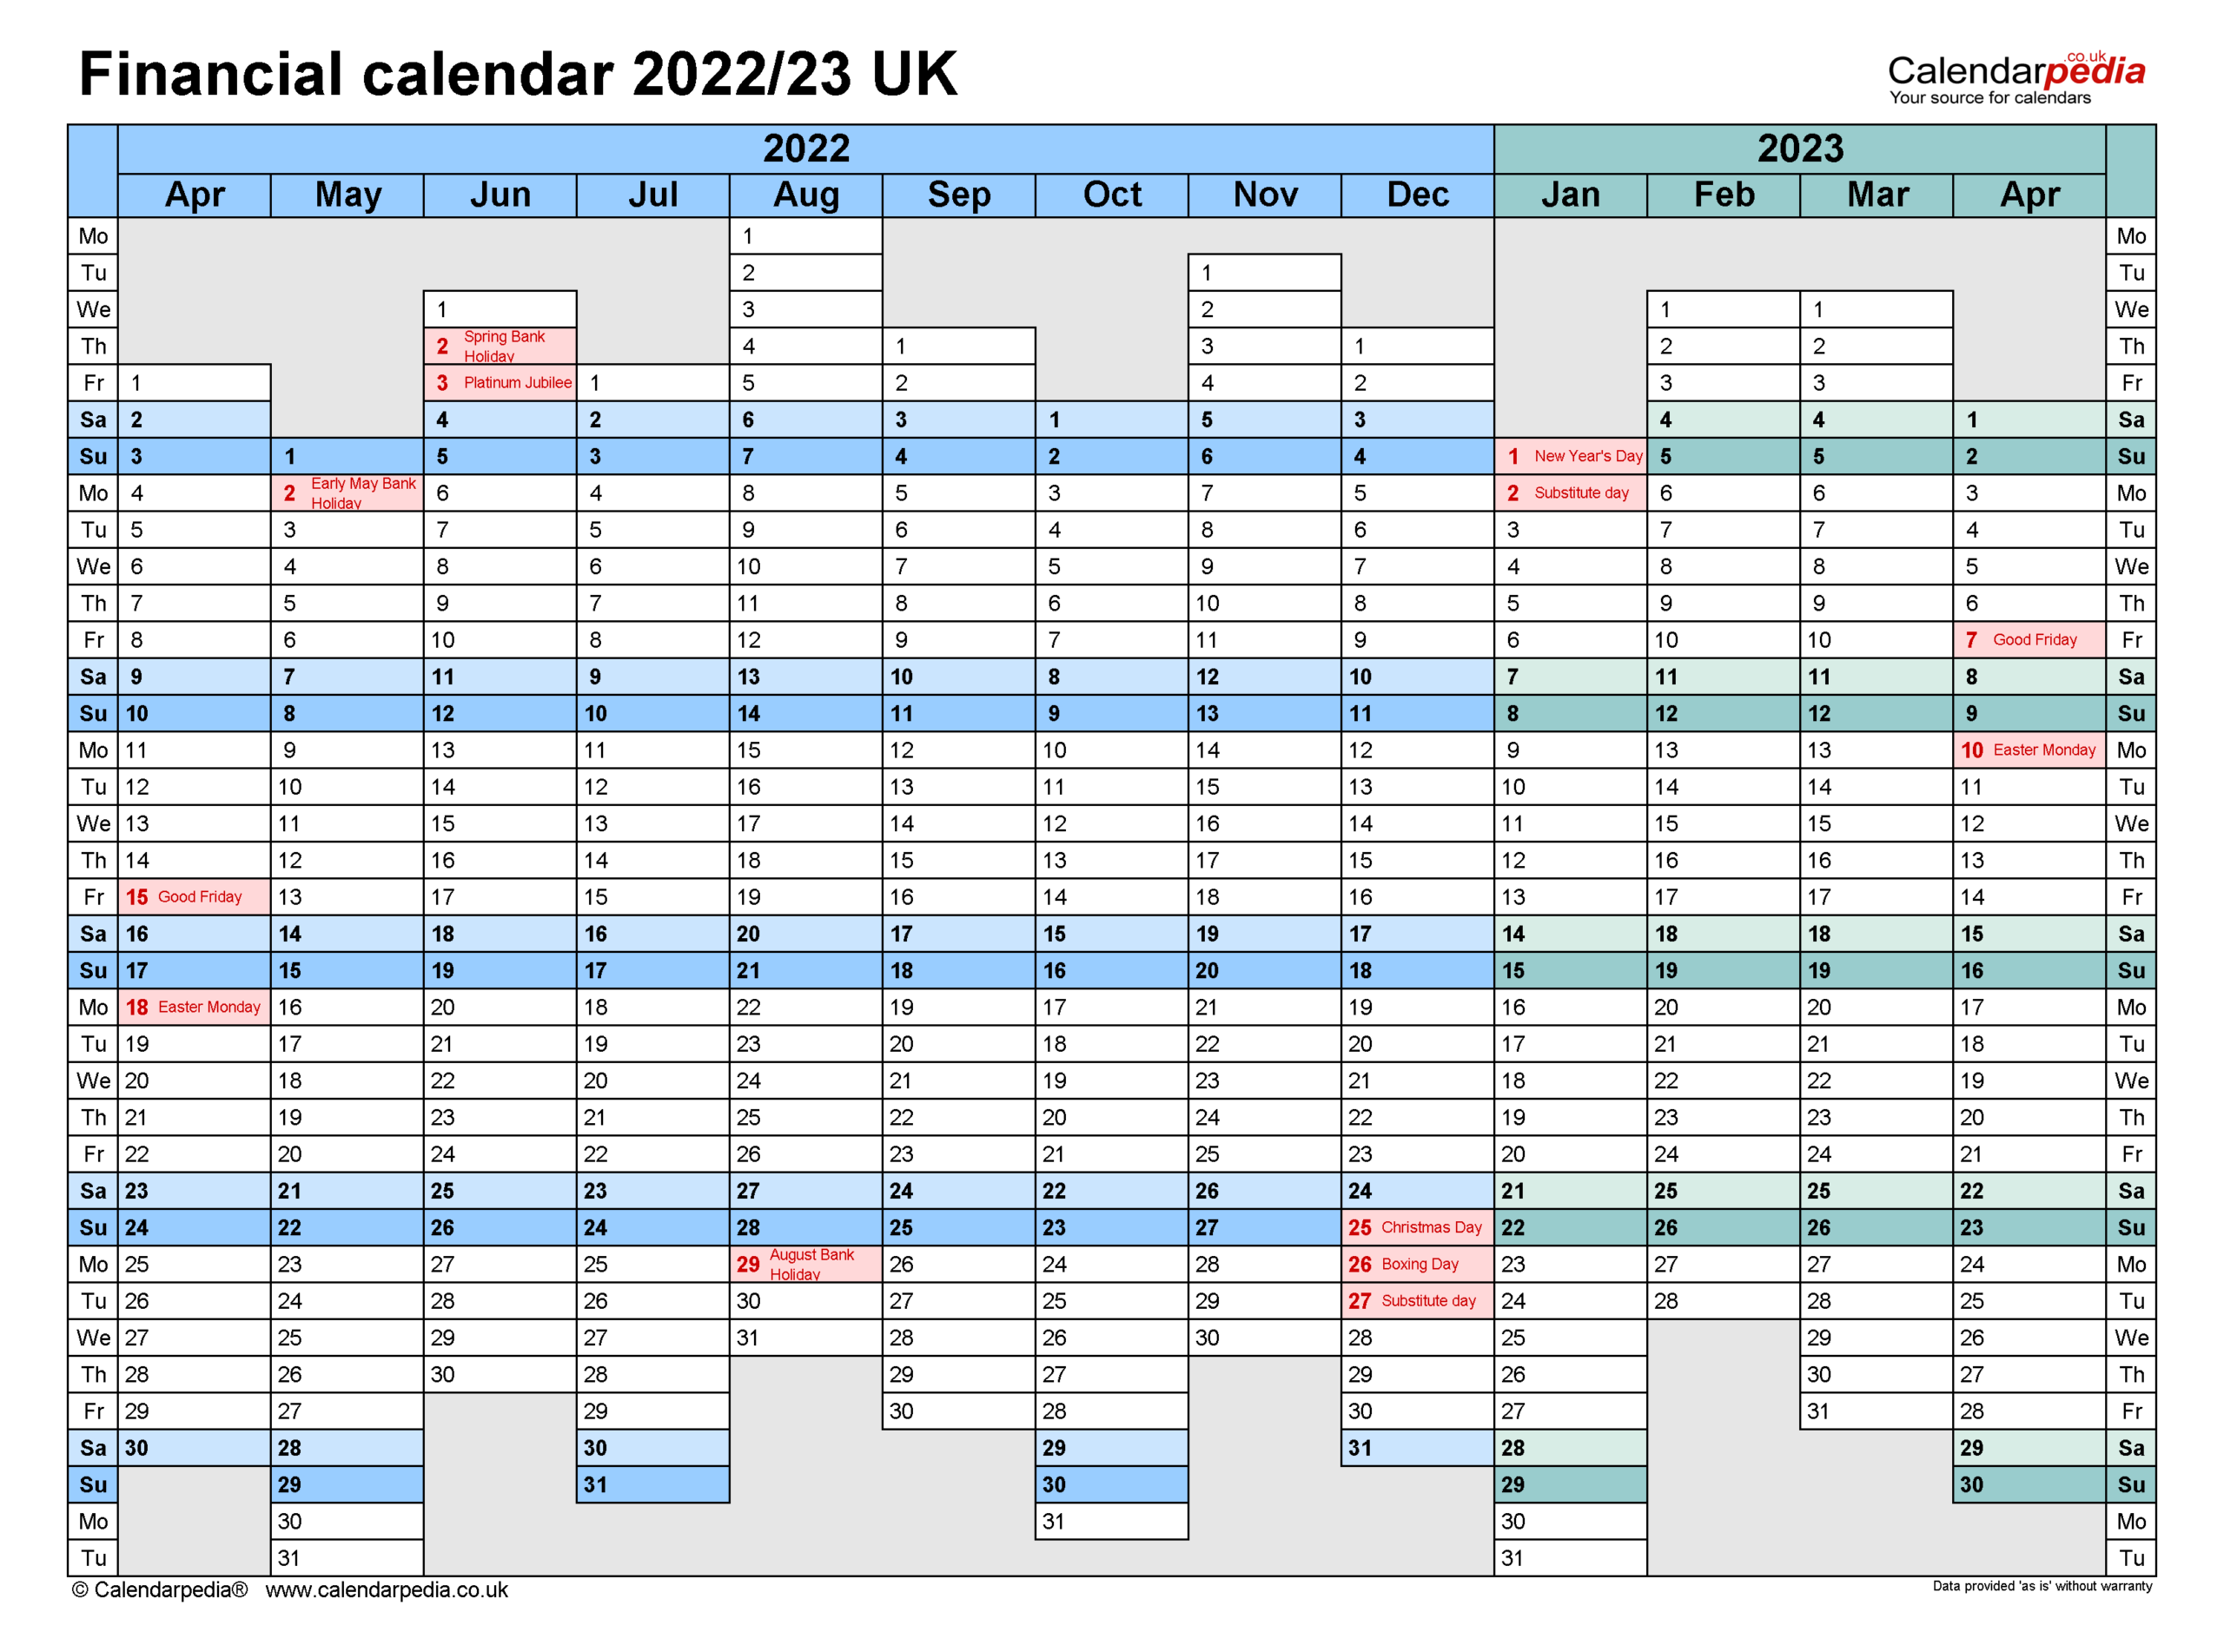 Collect April 23 2022 Calendar